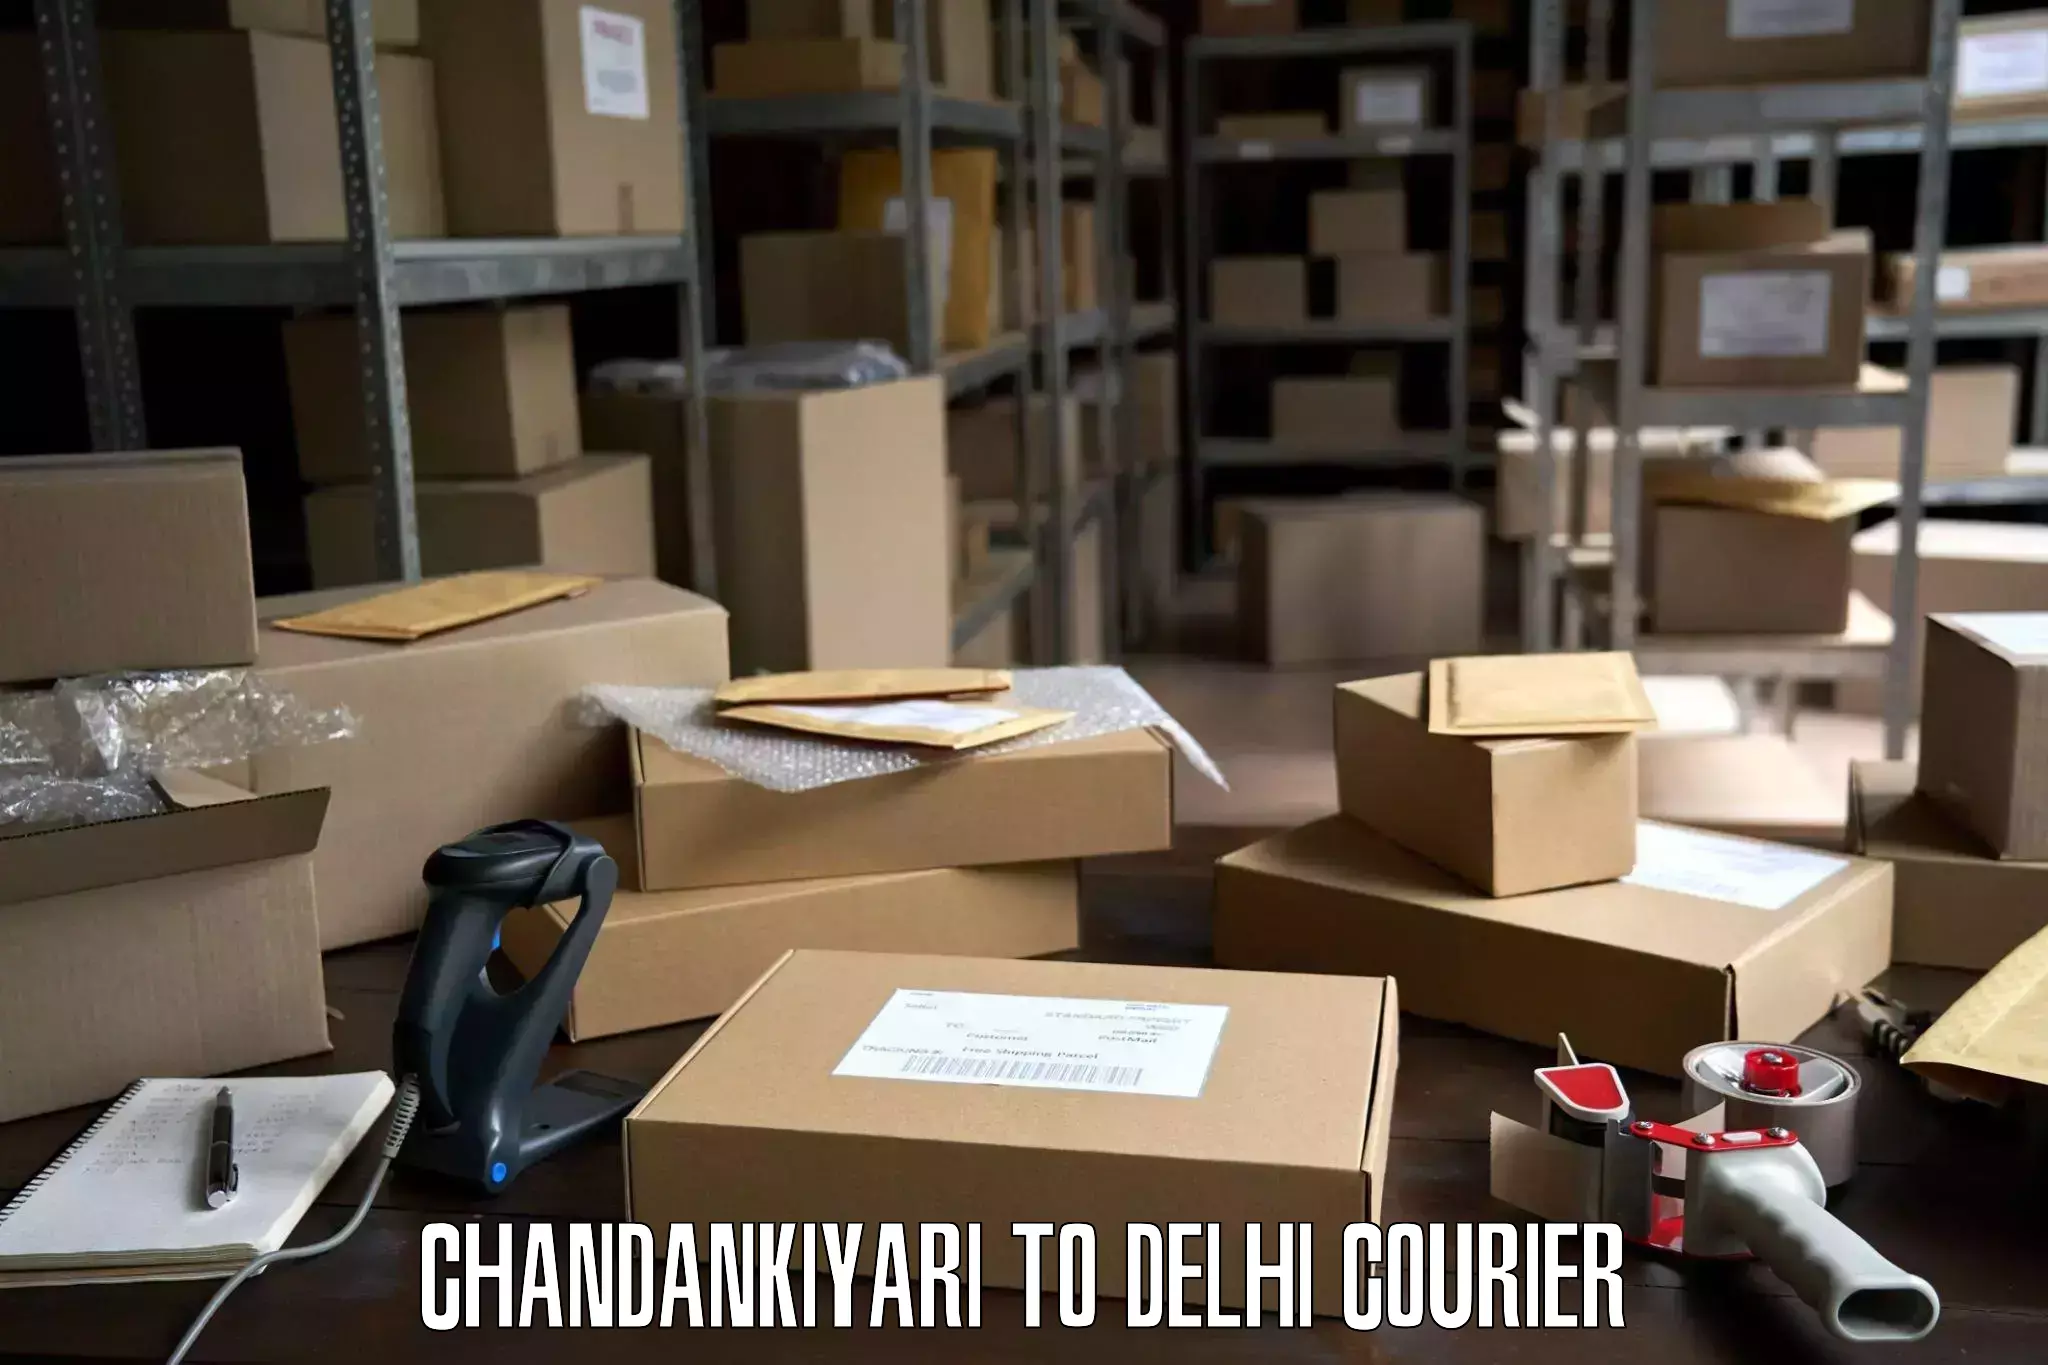 Efficient moving company Chandankiyari to Jamia Millia Islamia New Delhi